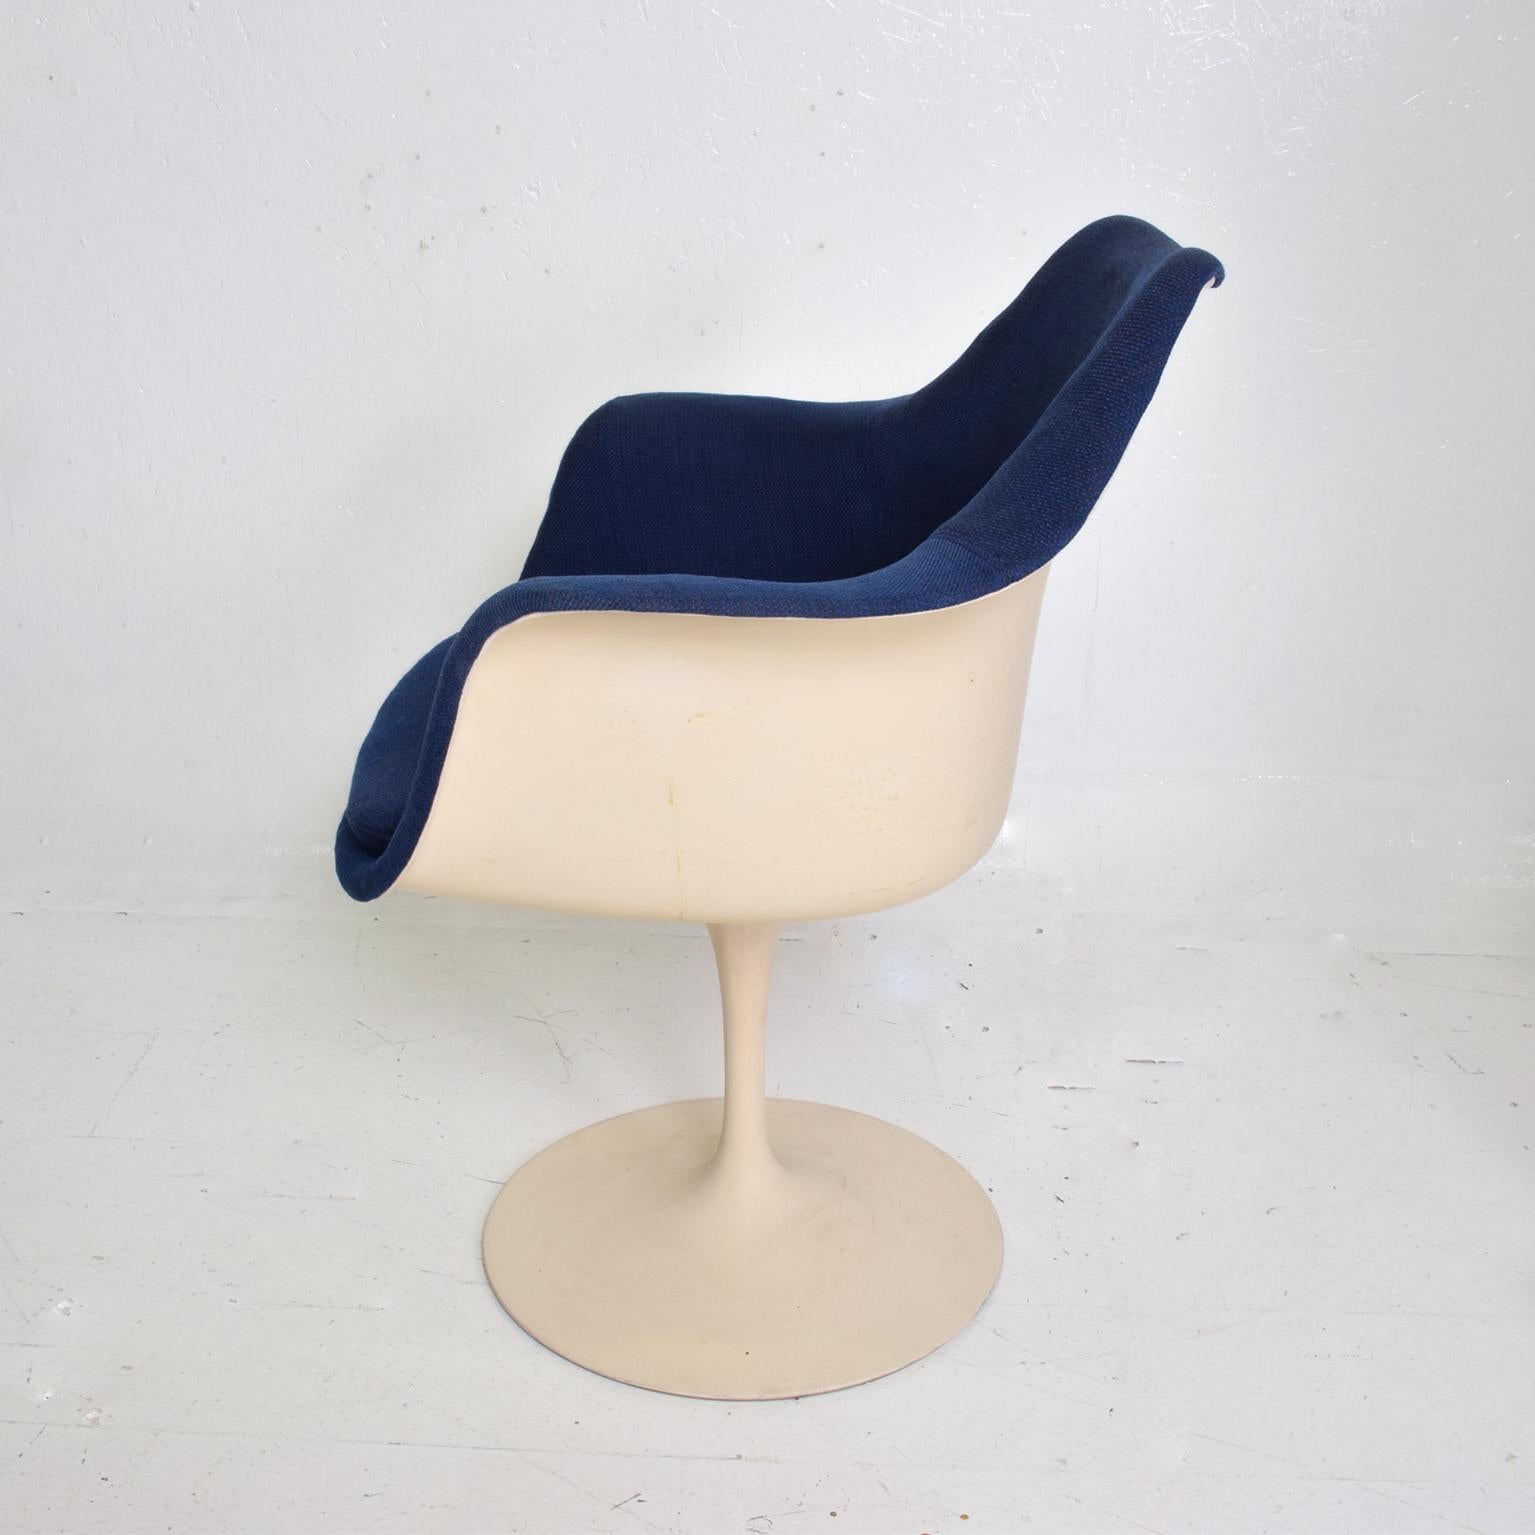 Aluminum Knoll Tulip Chair 1956 by Eero Saarinen Mid-Century Modern